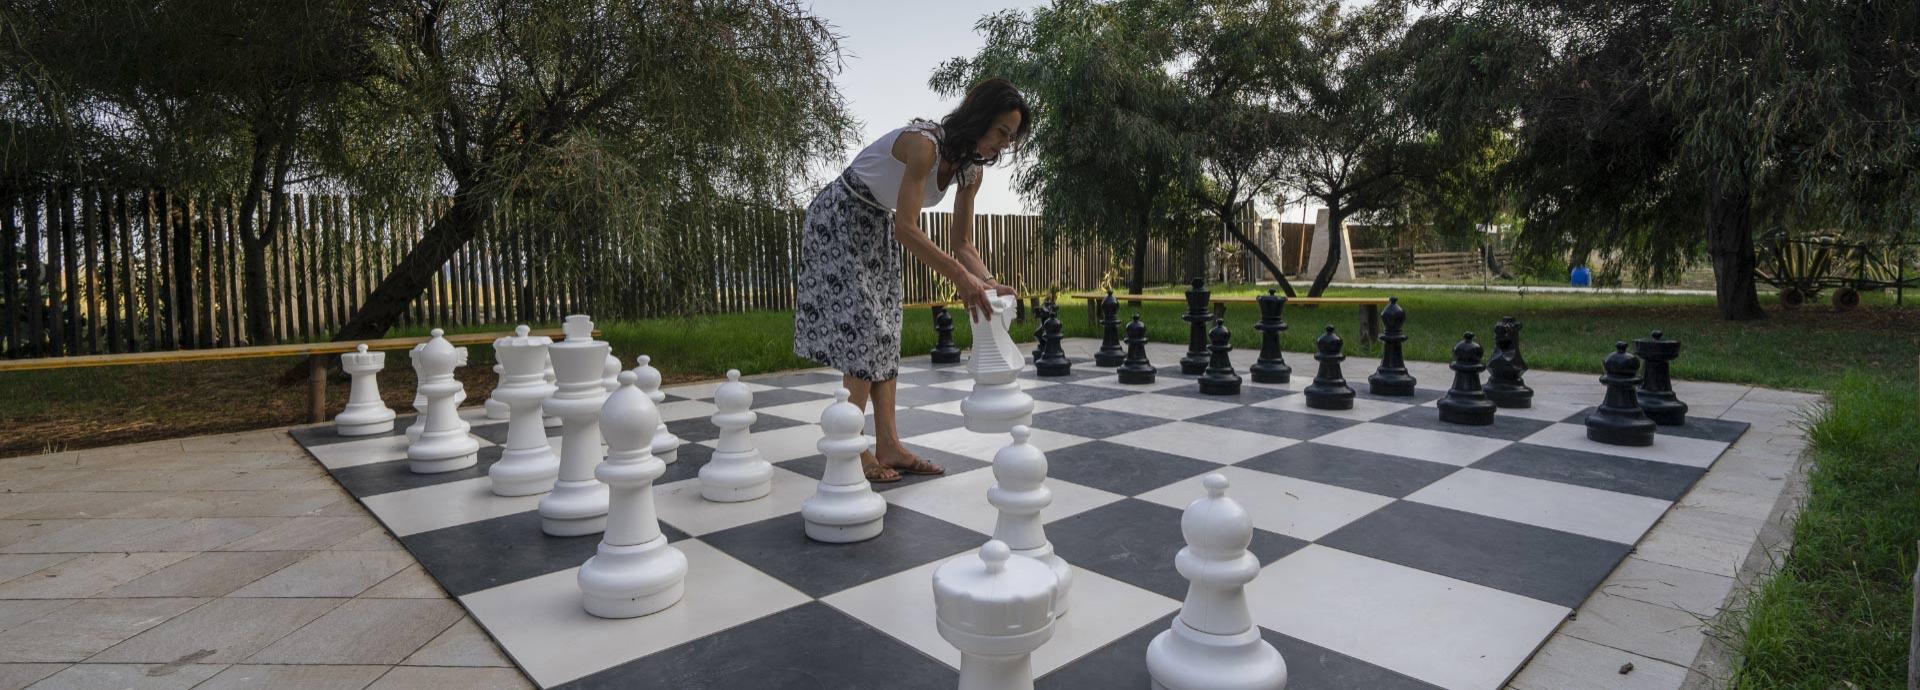 villaggioborgodegliulivi en 3-en-314621-news-2021-giant-chess 003